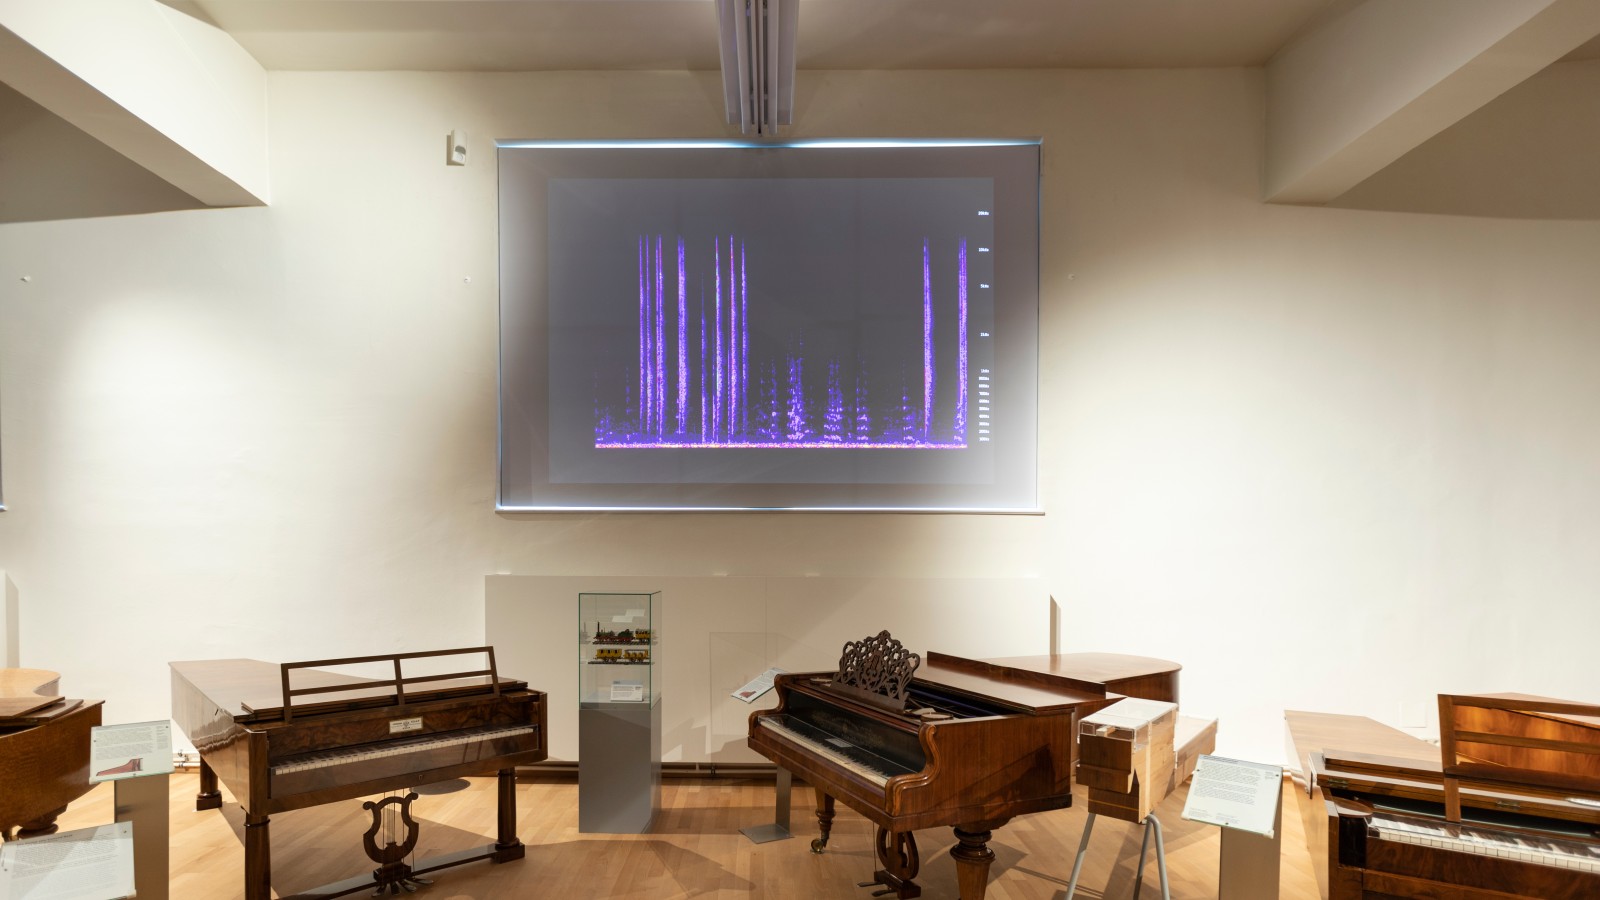 In Echtzeit im Raum erzeugte Klänge und Geräusche werden analysiert